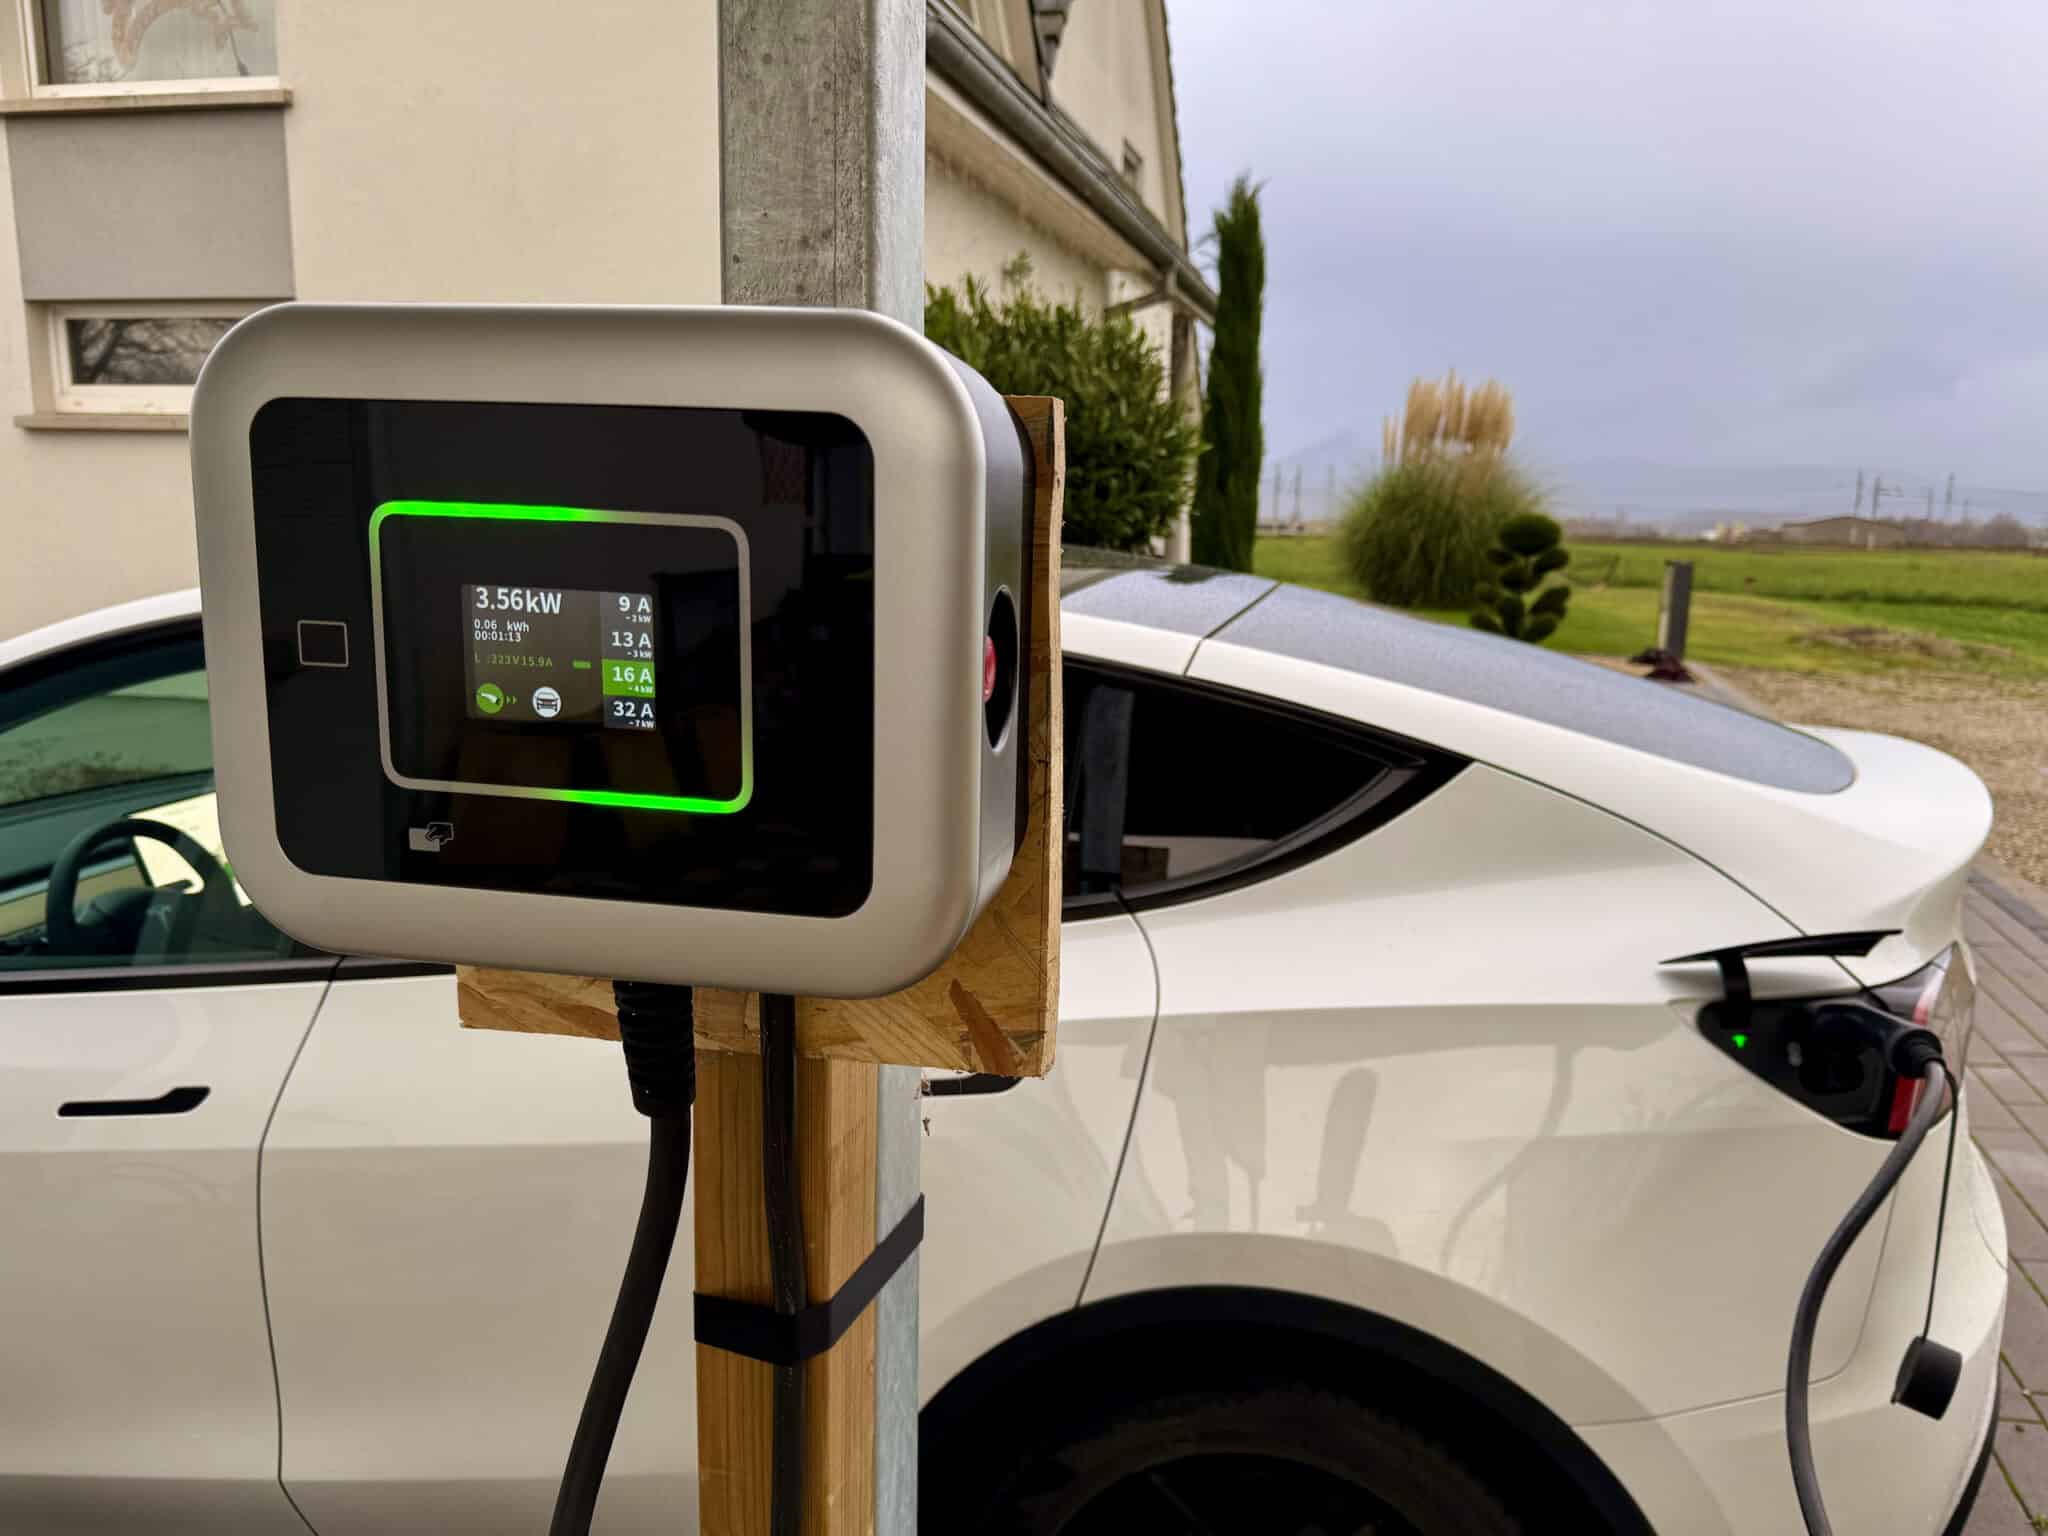 Bon plan – La borne de recharge Tesla Wall Connector V3 à prix réduit sur